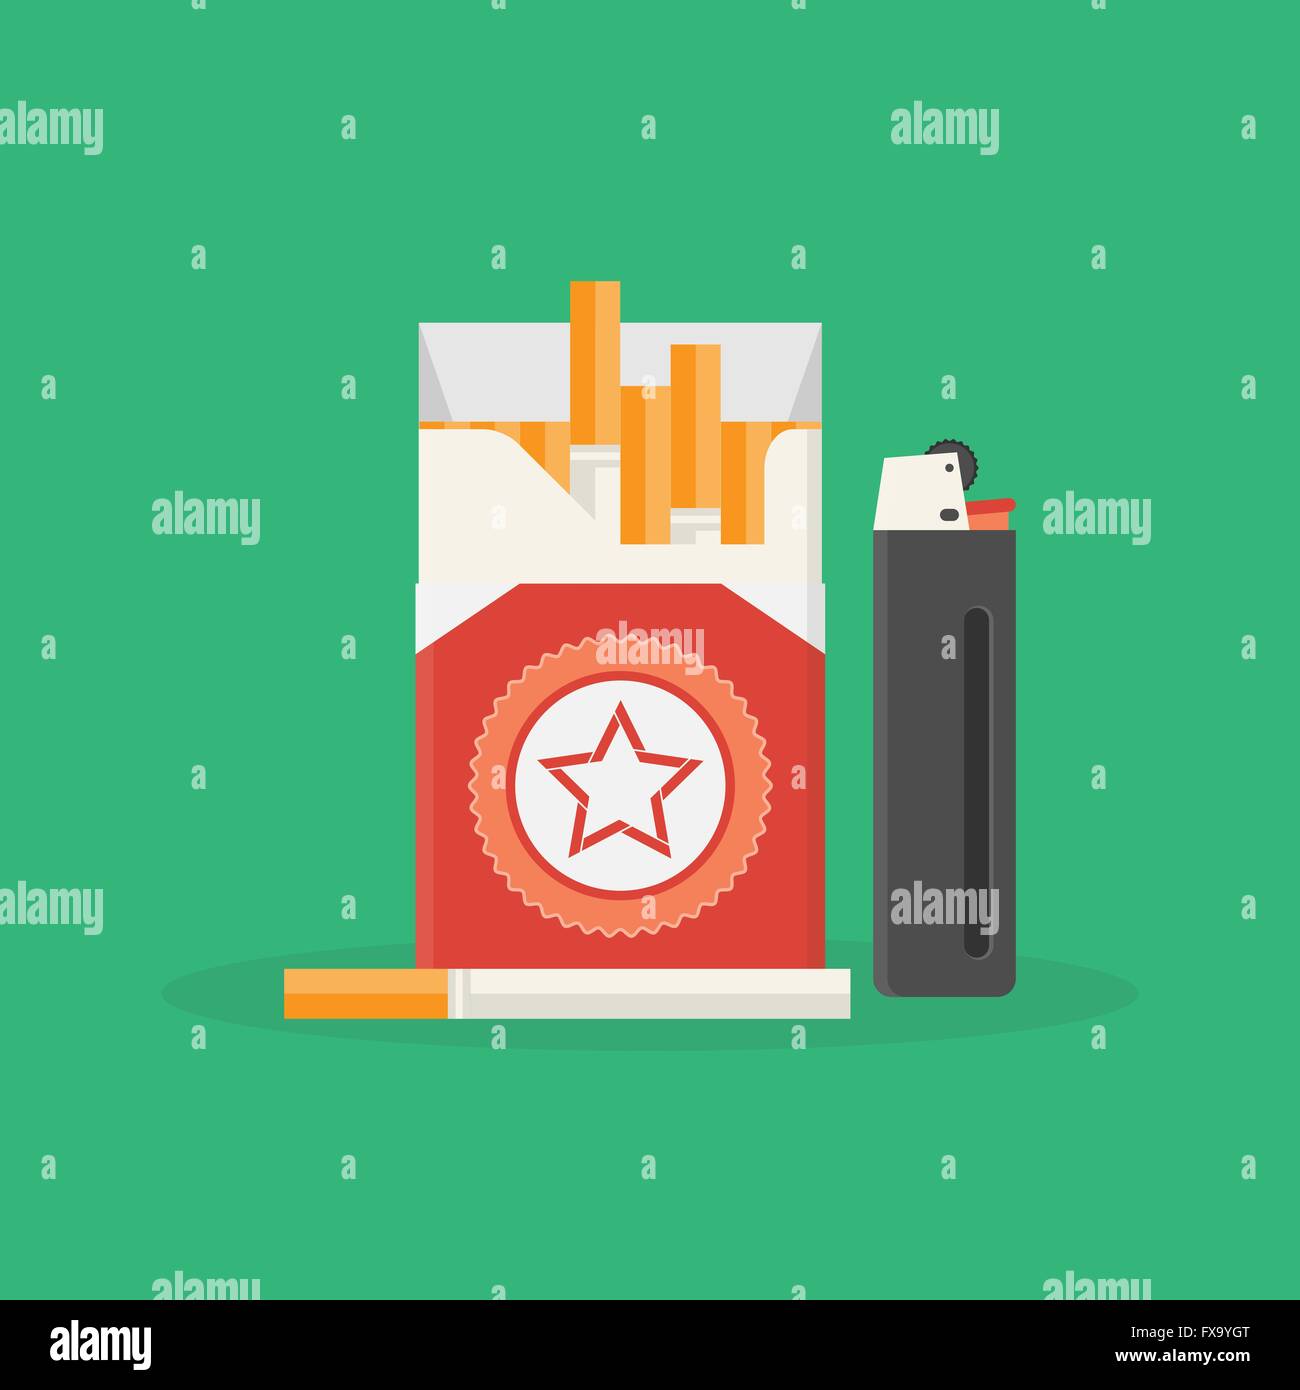 Illustrazione Vettoriale di apertura del pacchetto di sigarette e sigari. Problema di fumo. Dipendenza da nicotina. Uno stile di vita poco salutare concetto Illustrazione Vettoriale